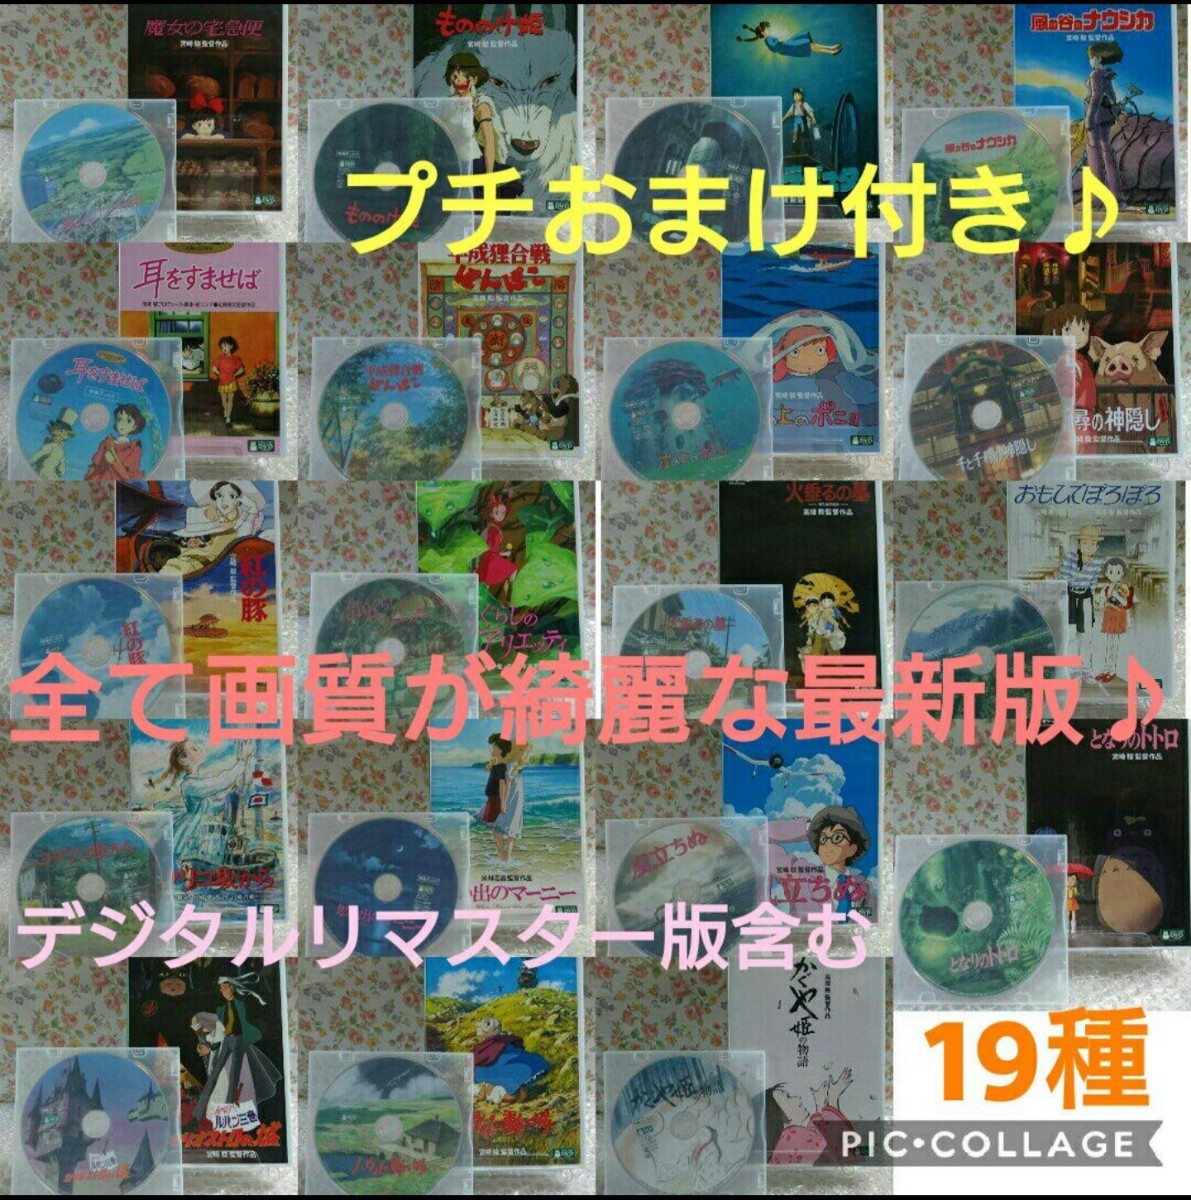 DVD ジブリ 19種 セット 特典 【本編も再生可能】 スタジオジブリ